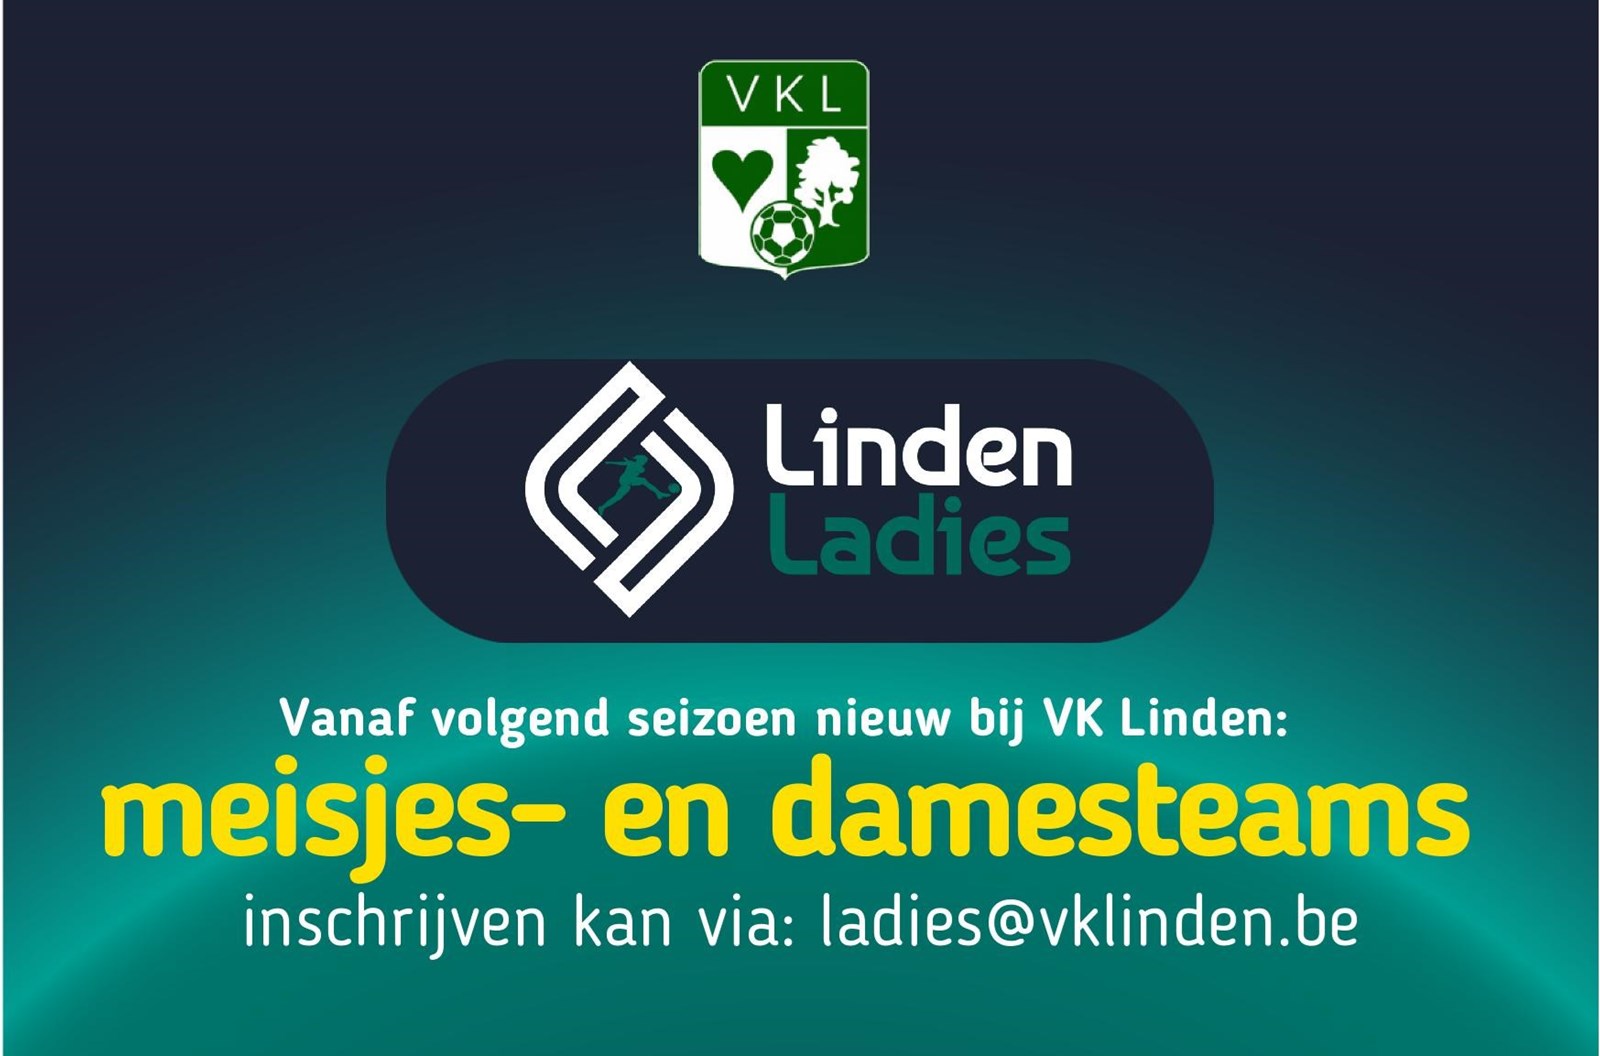 VK Linden begint volgend seizoen met vrouwelijke teams, de VK Linden Ladies!